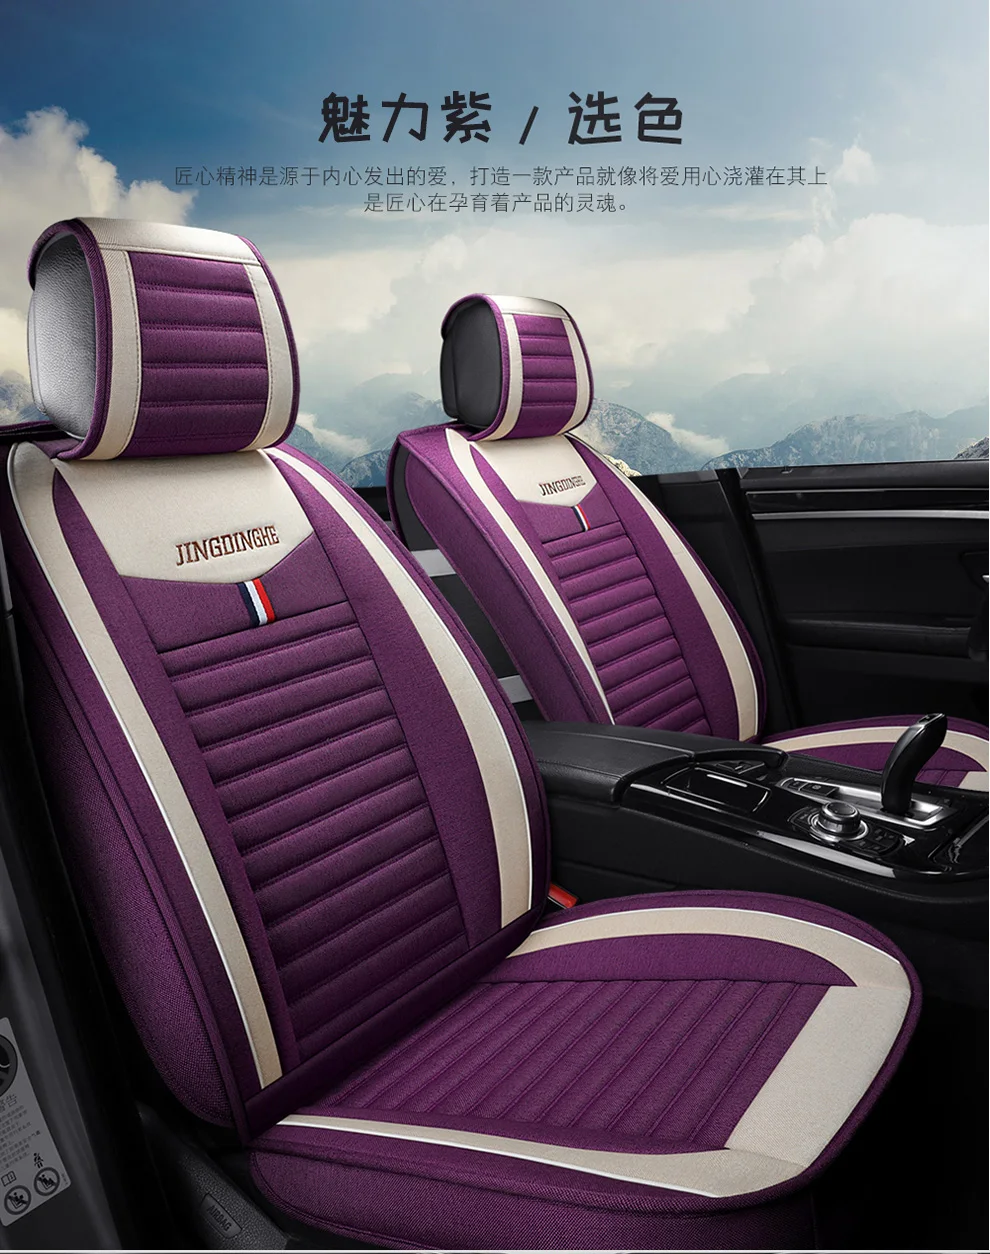 Универсальный льняное волокно сиденья авто чехлы сидений для Nissan almera листьев sentra Tiida Teana GTR juke dualis terrano xtrail